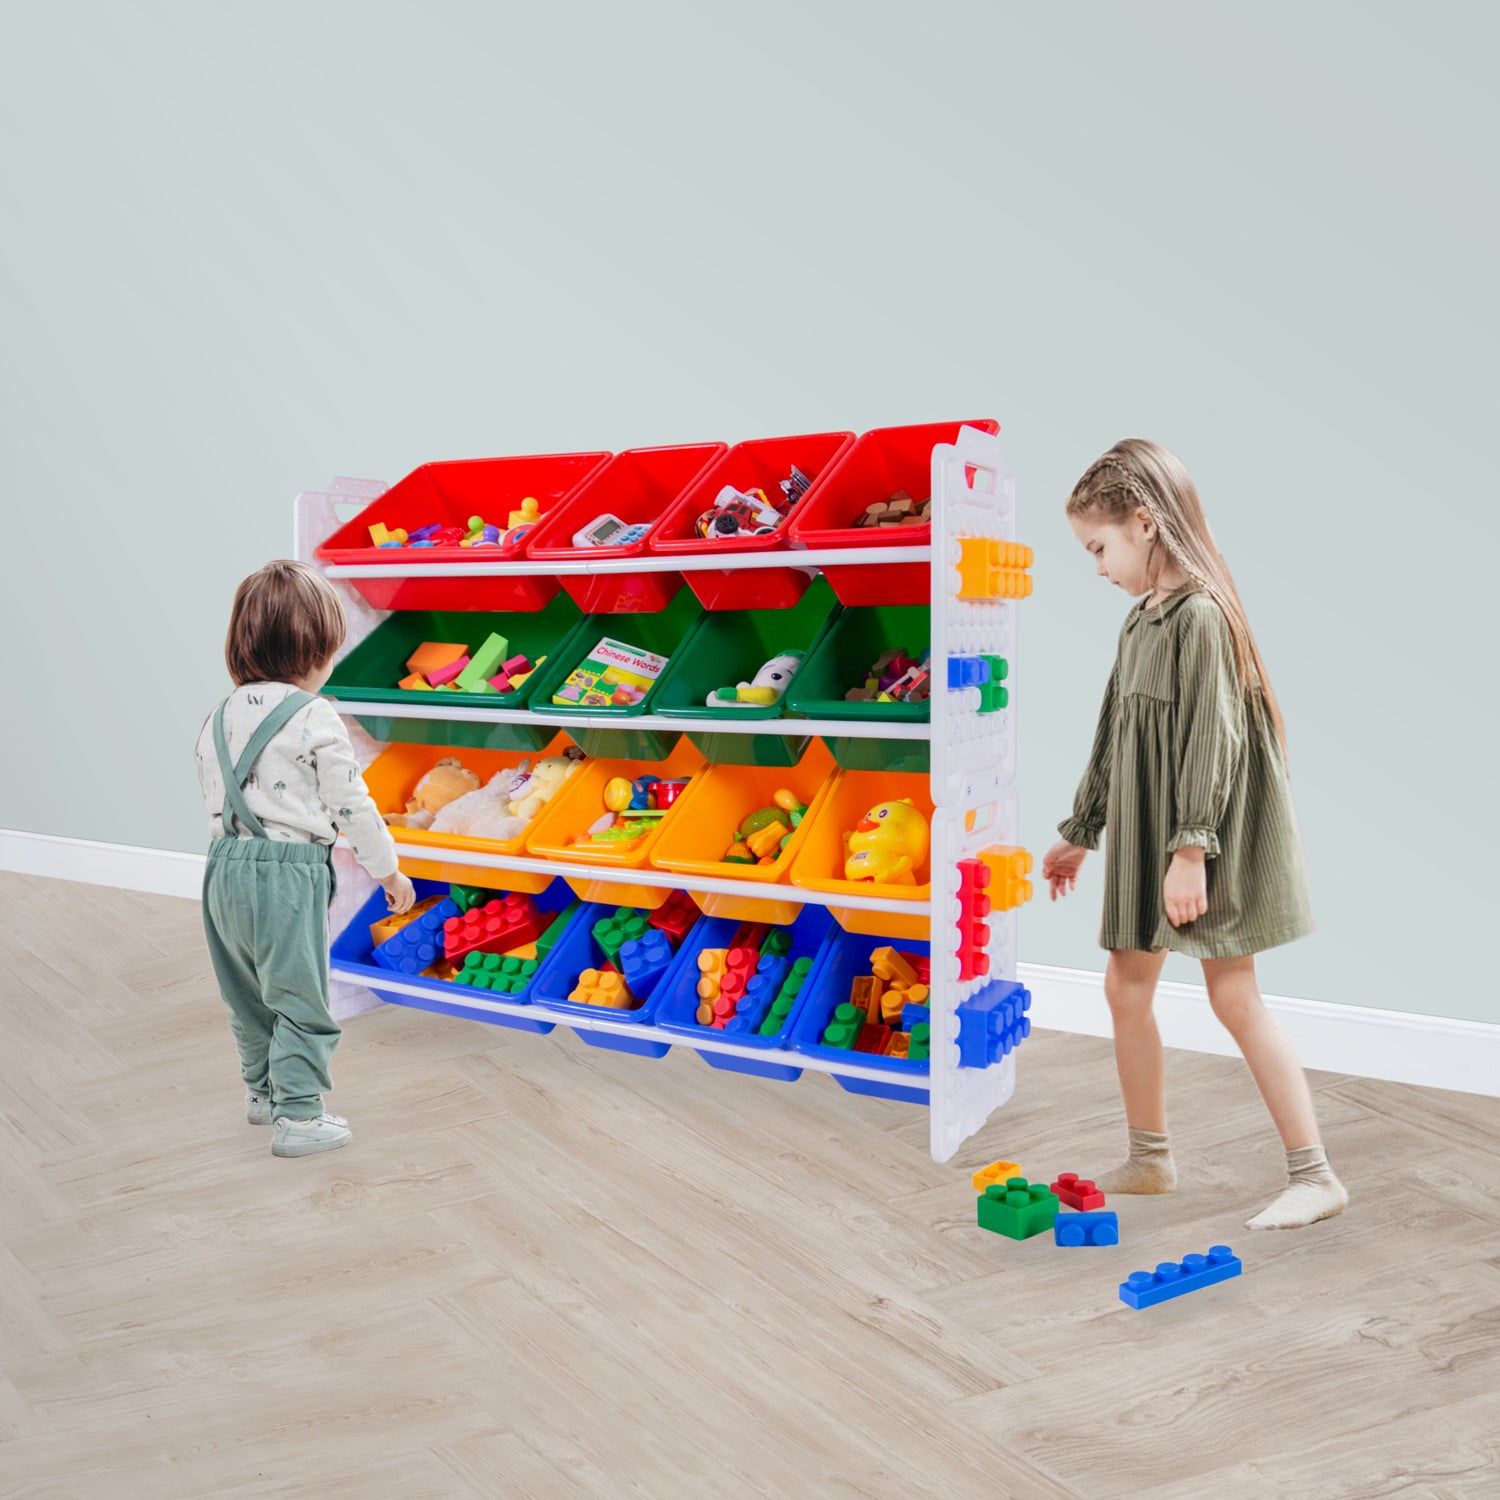 UNiPLAY 16 Bins Toy Storage Organizer - Primary (UB45721)